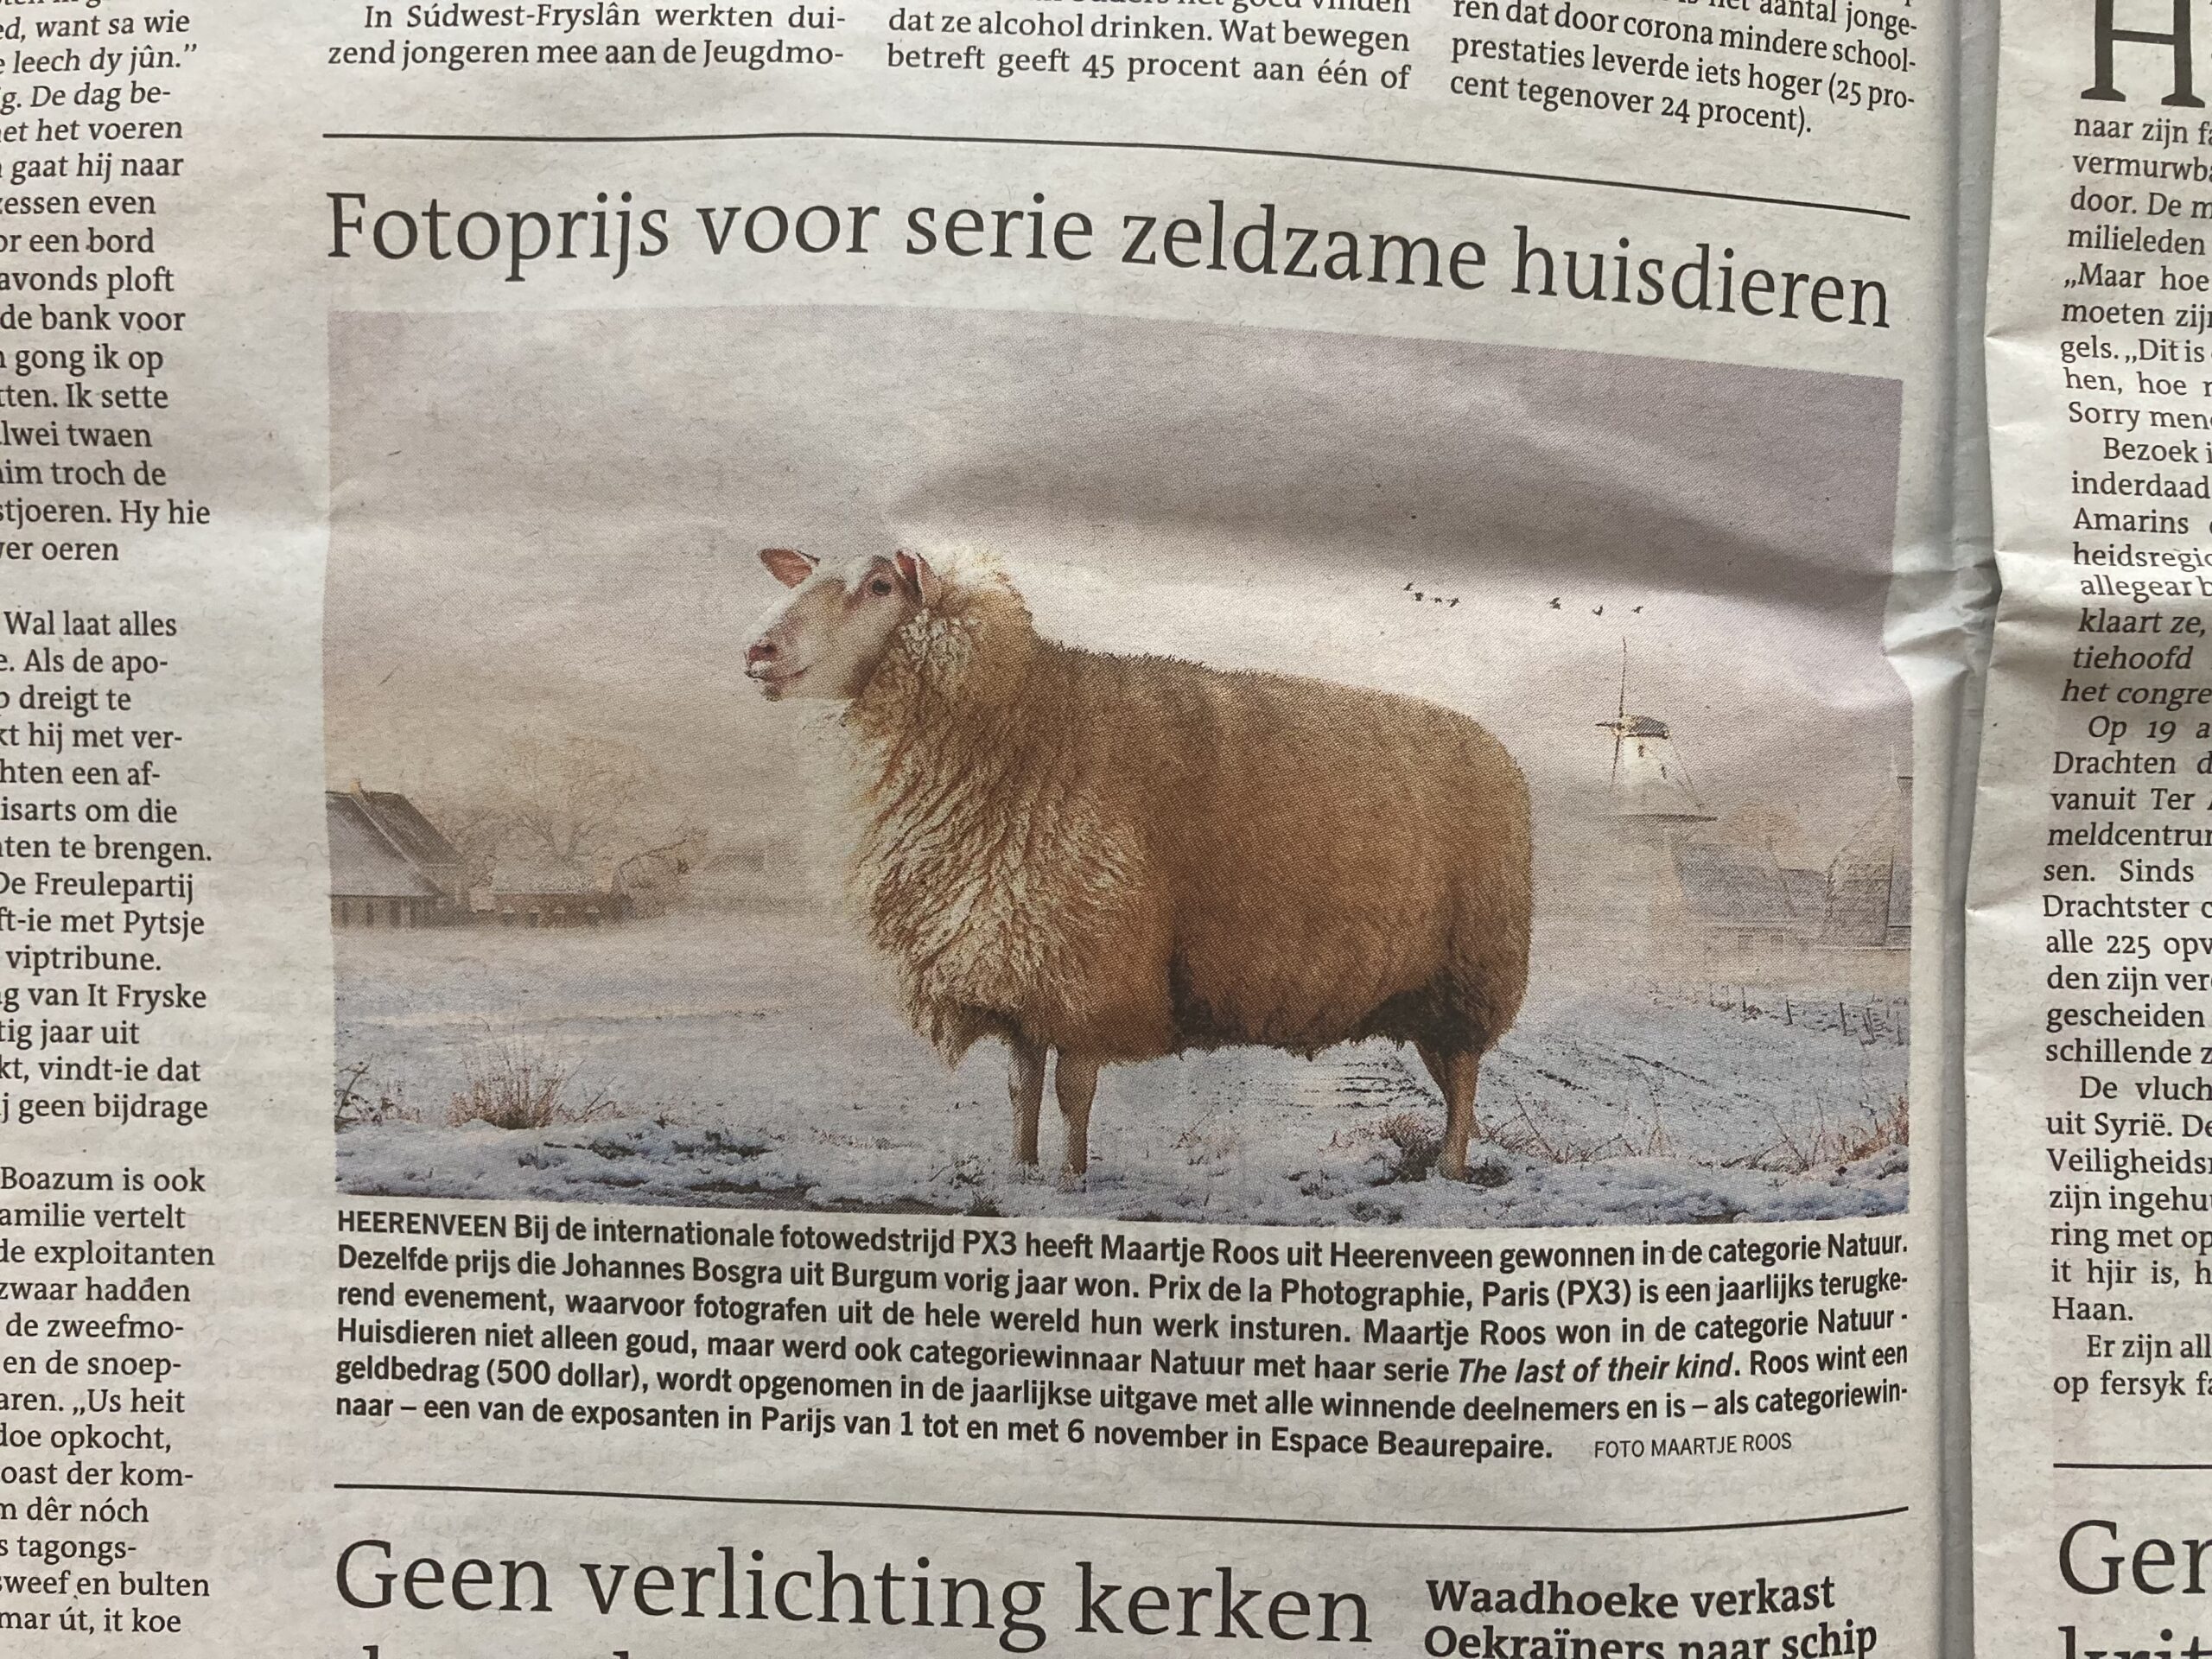 Maartje Roos  wint internationale fotowedstrijd met foto’s van zeldzame huisdieren